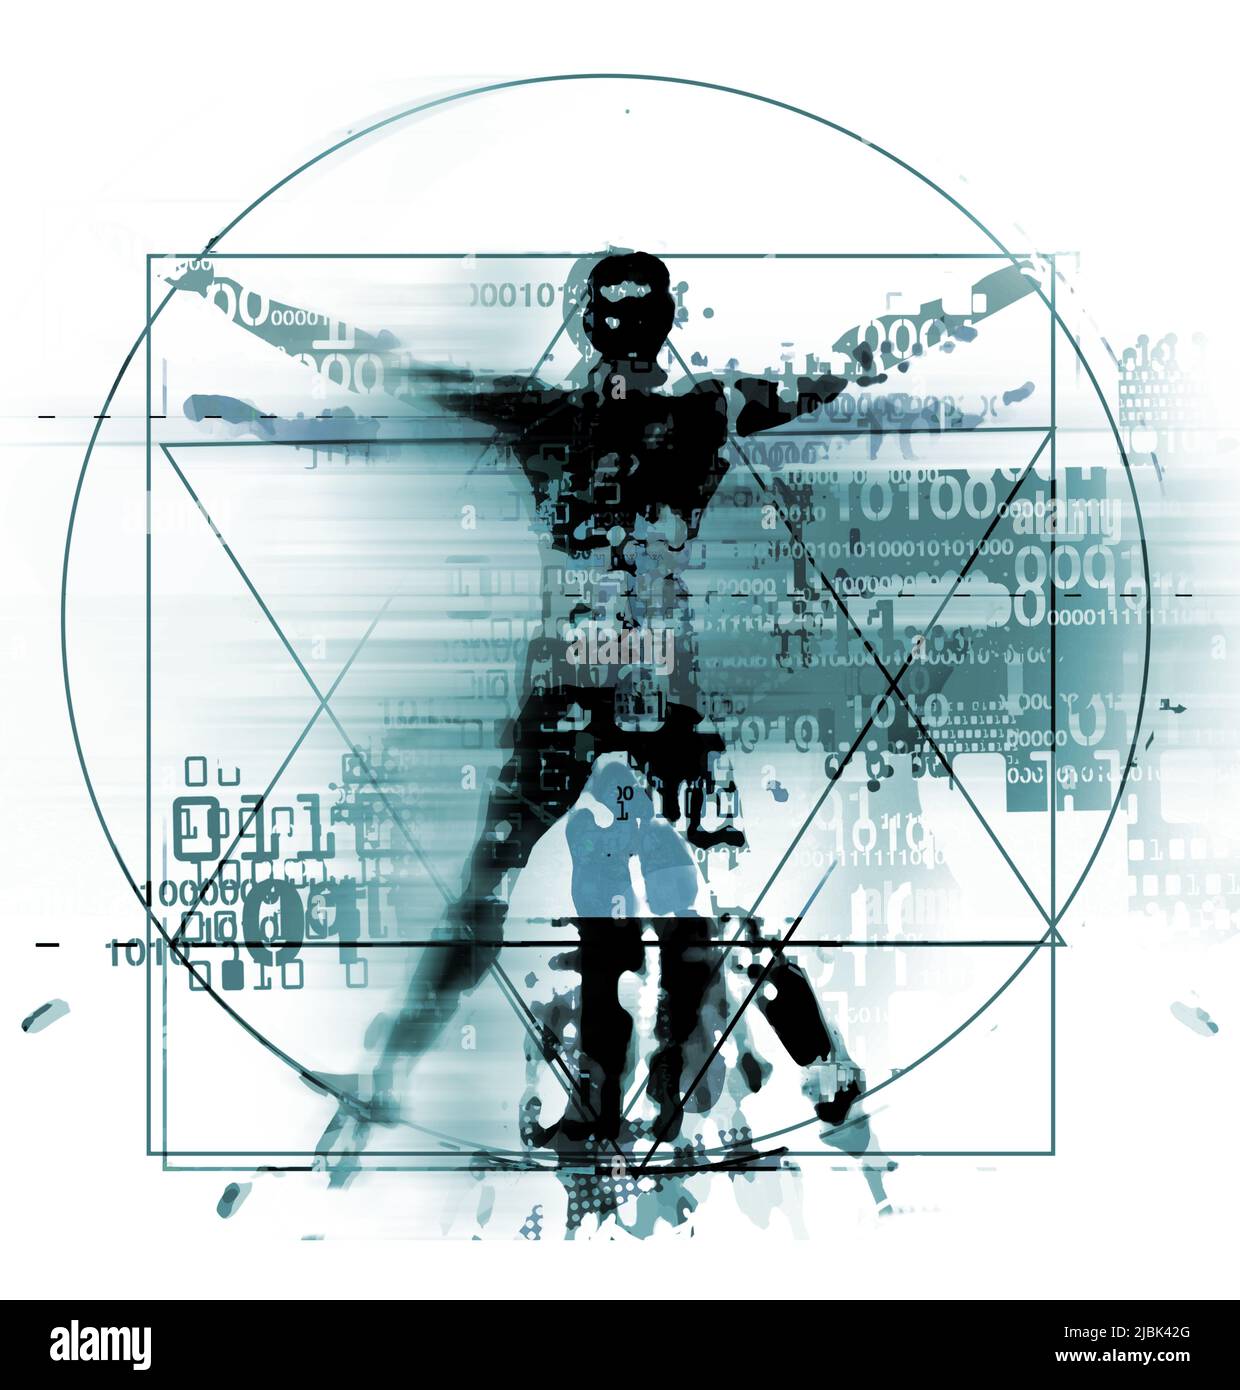 Uomo vitruviano dell'era digitale, sfondo blu. Illustrazione di un uomo vitruviano con un codice binario simboleggiato l'età digitale. Concetto futuristico. Foto Stock